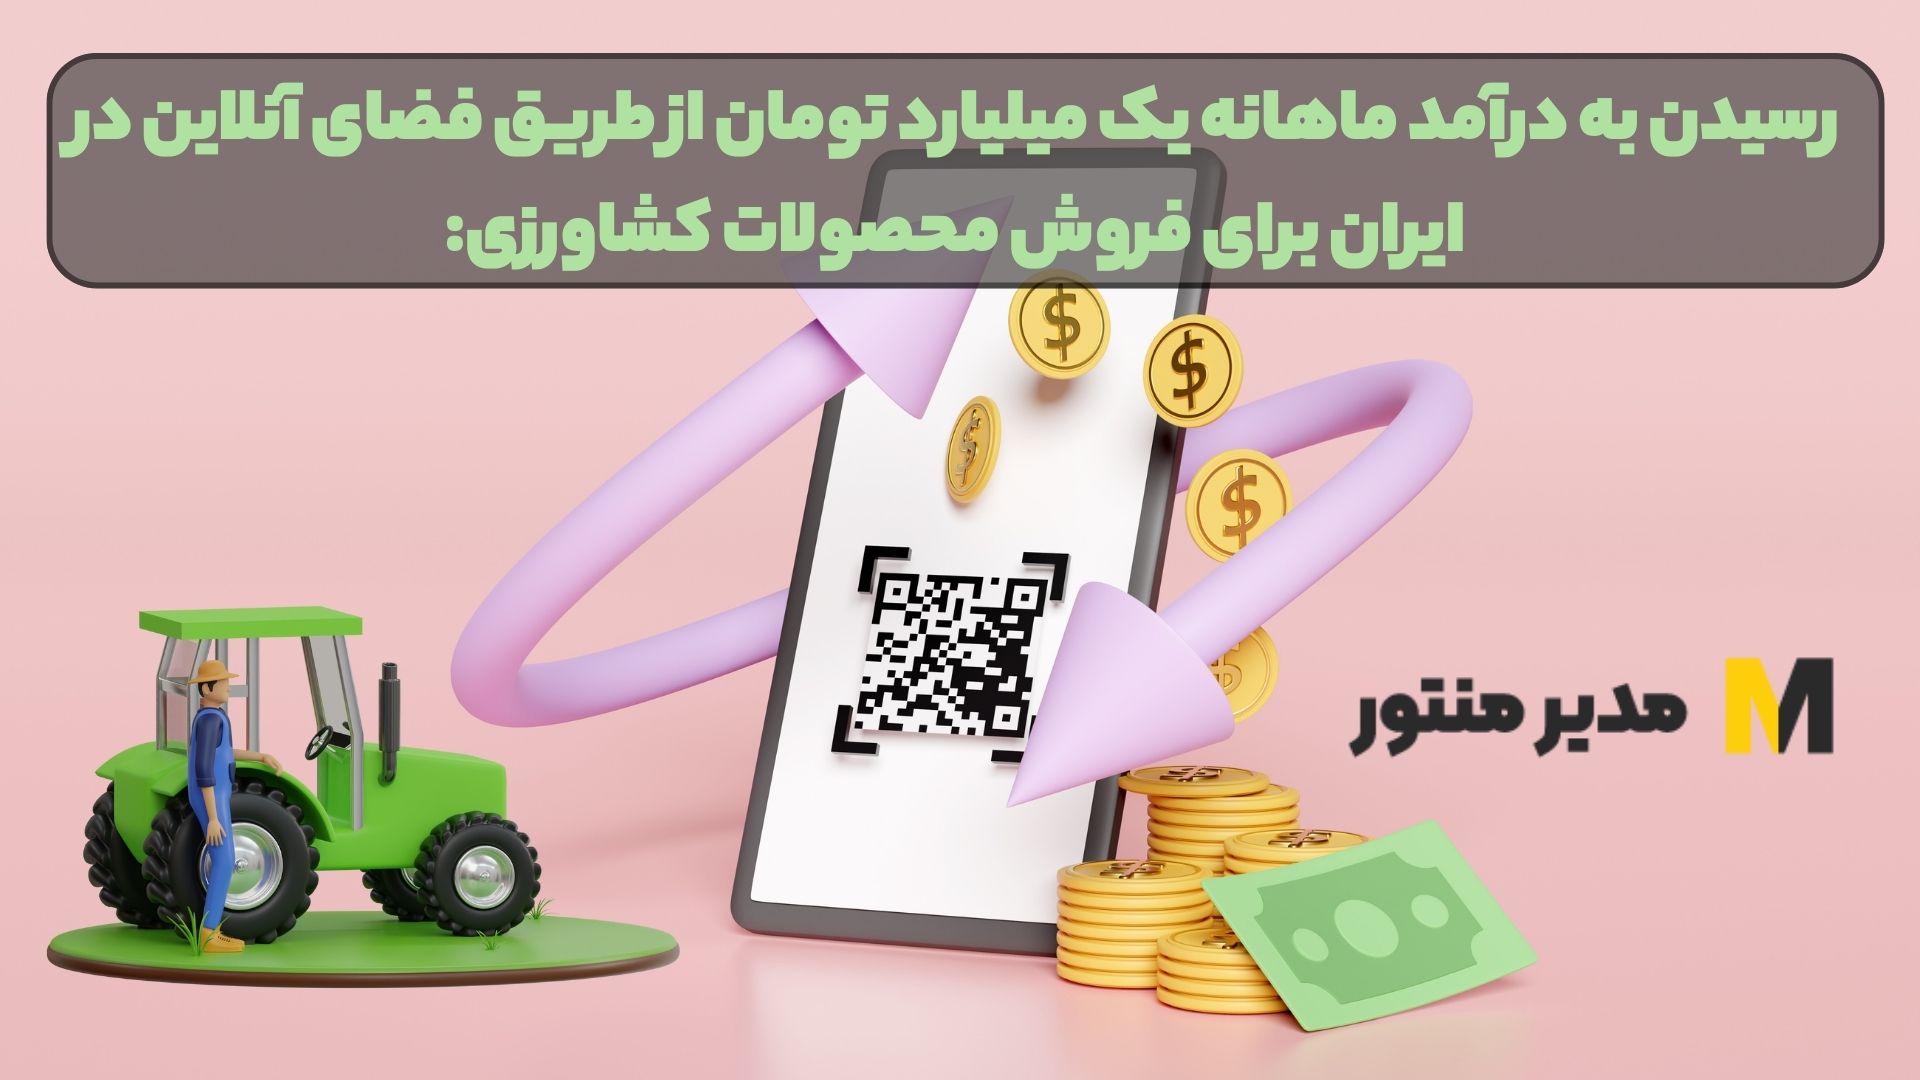 رسیدن به درآمد ماهانه یک میلیارد تومان از طریق فضای آنلاین در ایران برای فروش محصولات کشاورزی: